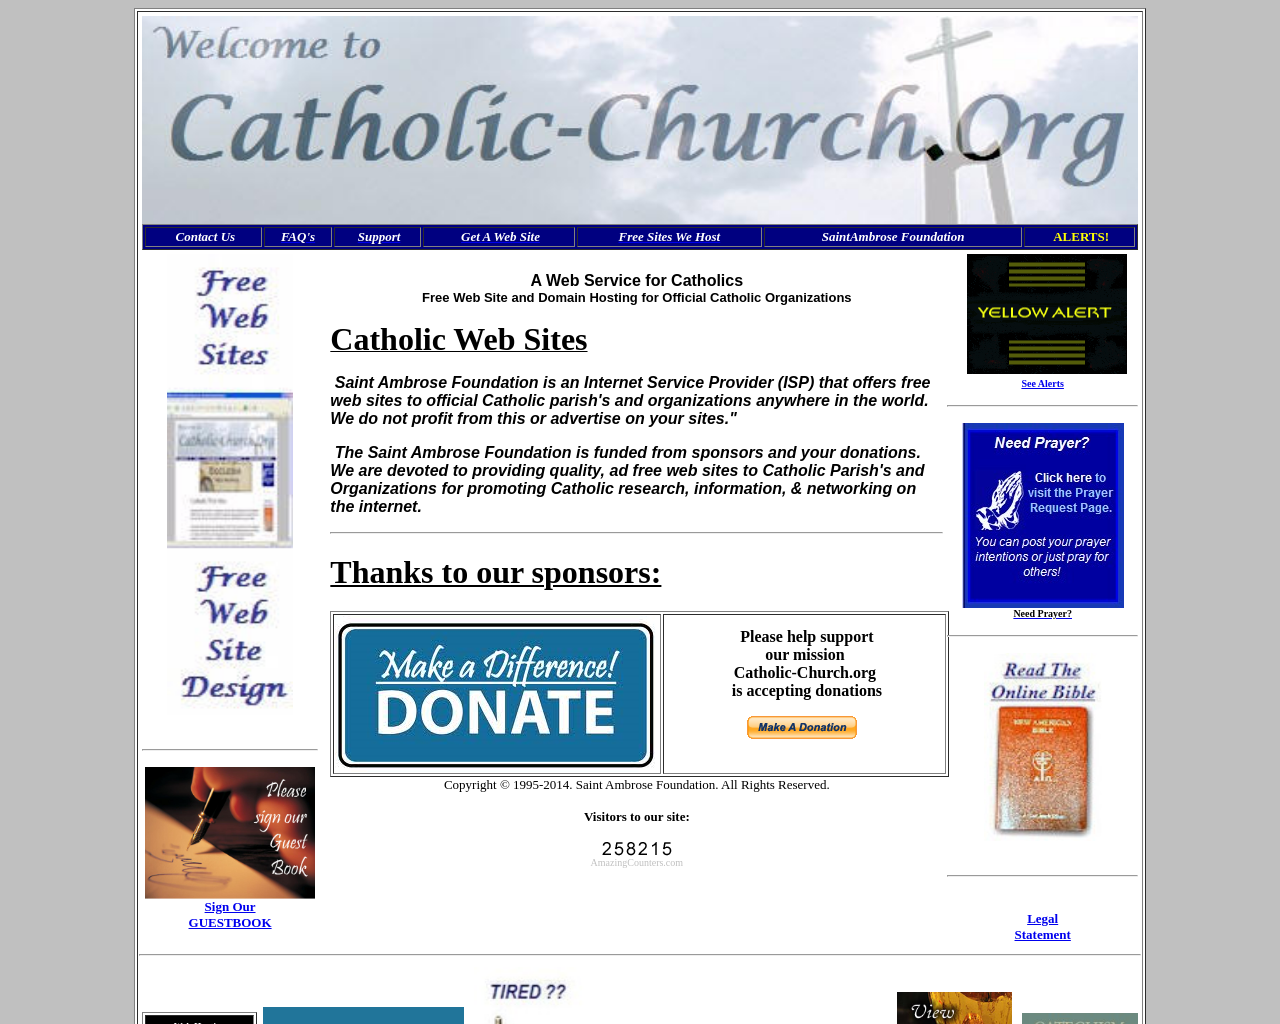 catholic-church.org